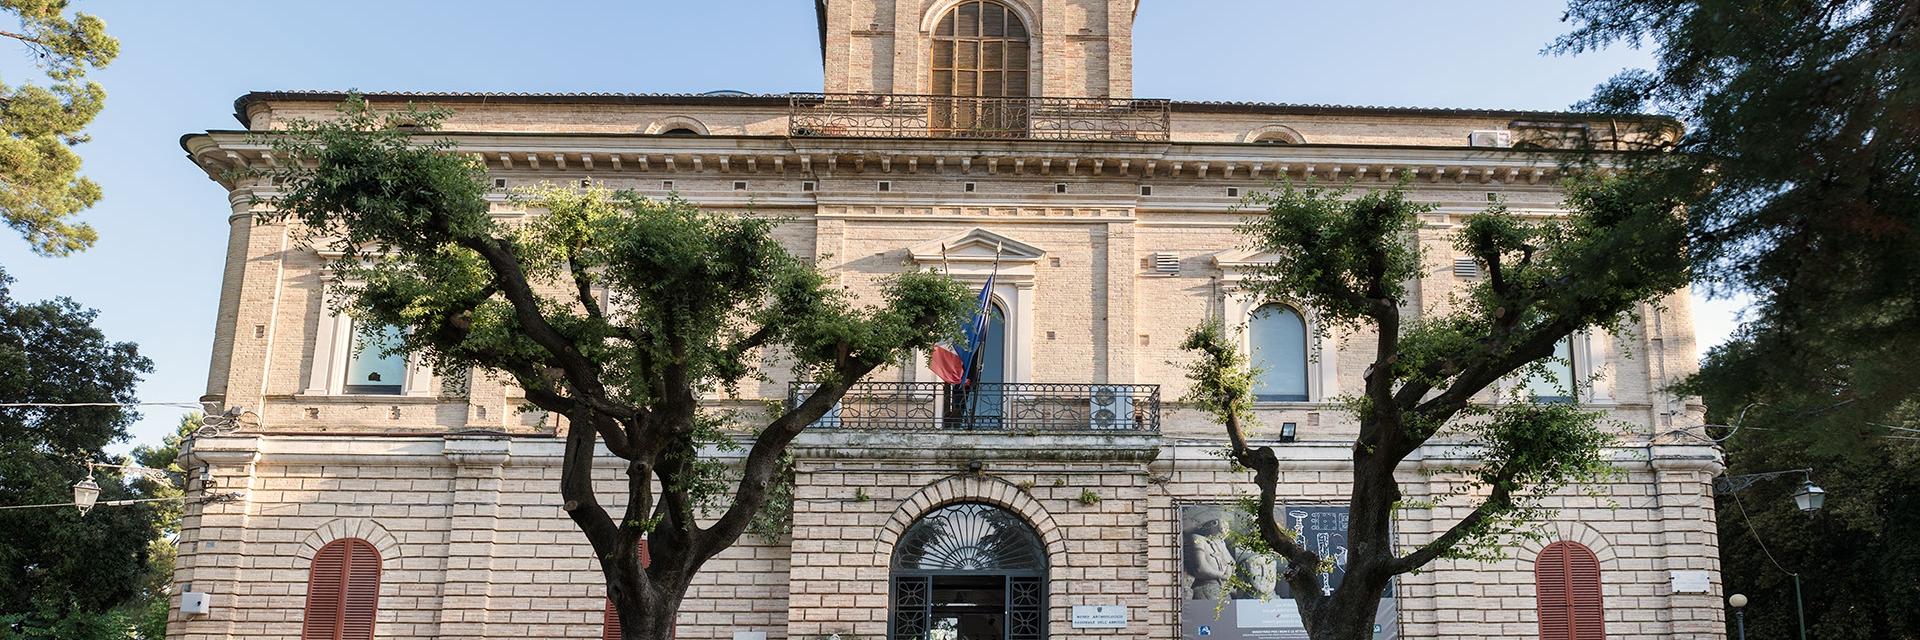 Museo Archeologico Nazionale di Chieti